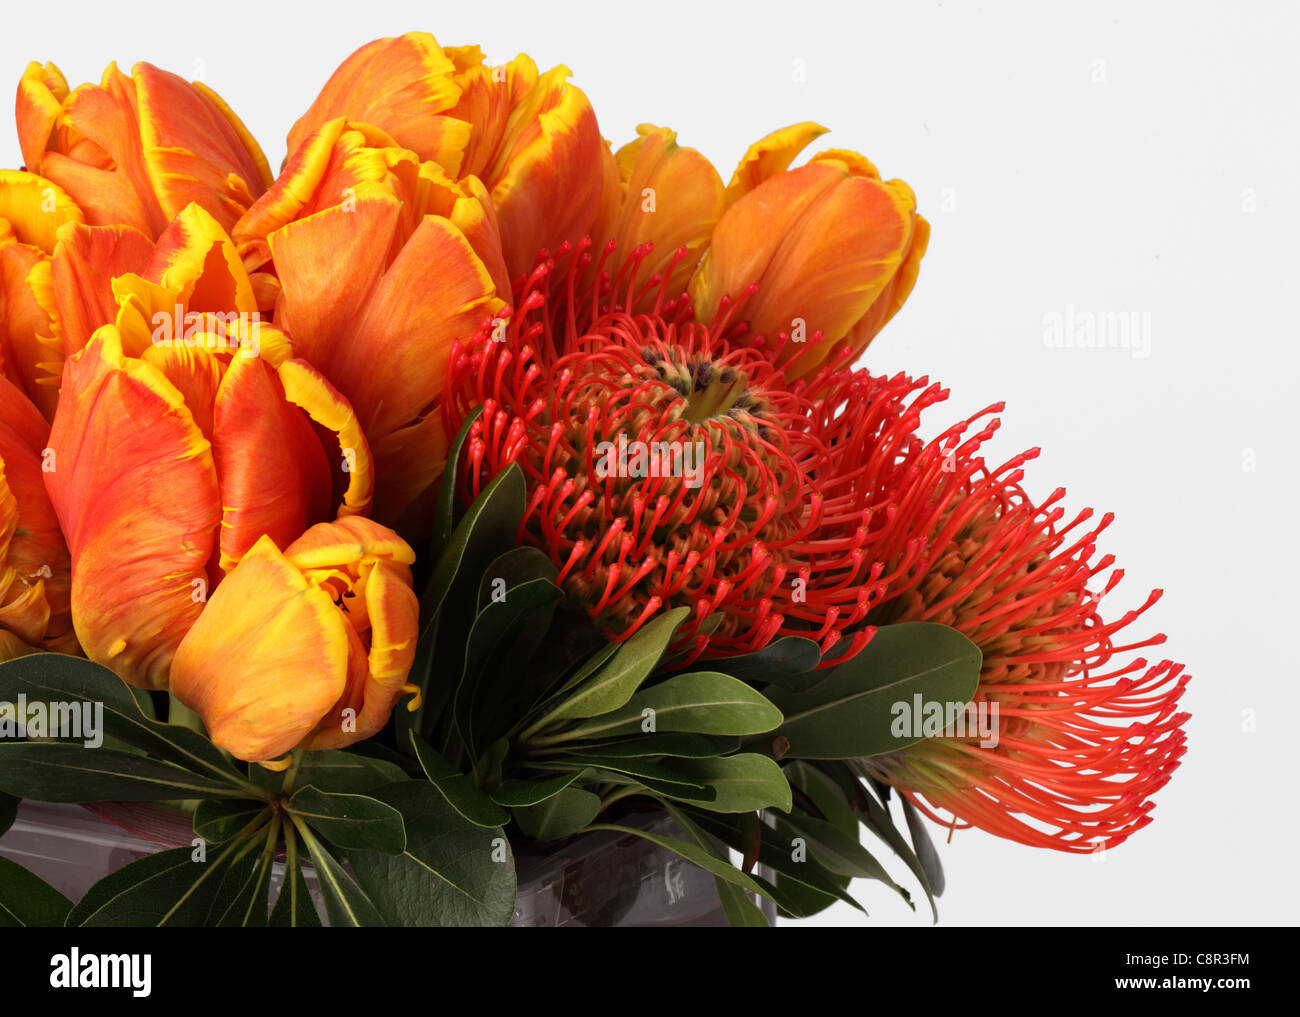 Eine Nahaufnahme von einem bunten Strauß Blumen. Orange / gelbe Tulpen, rote Rosen, 2 rote proteas Stockfoto